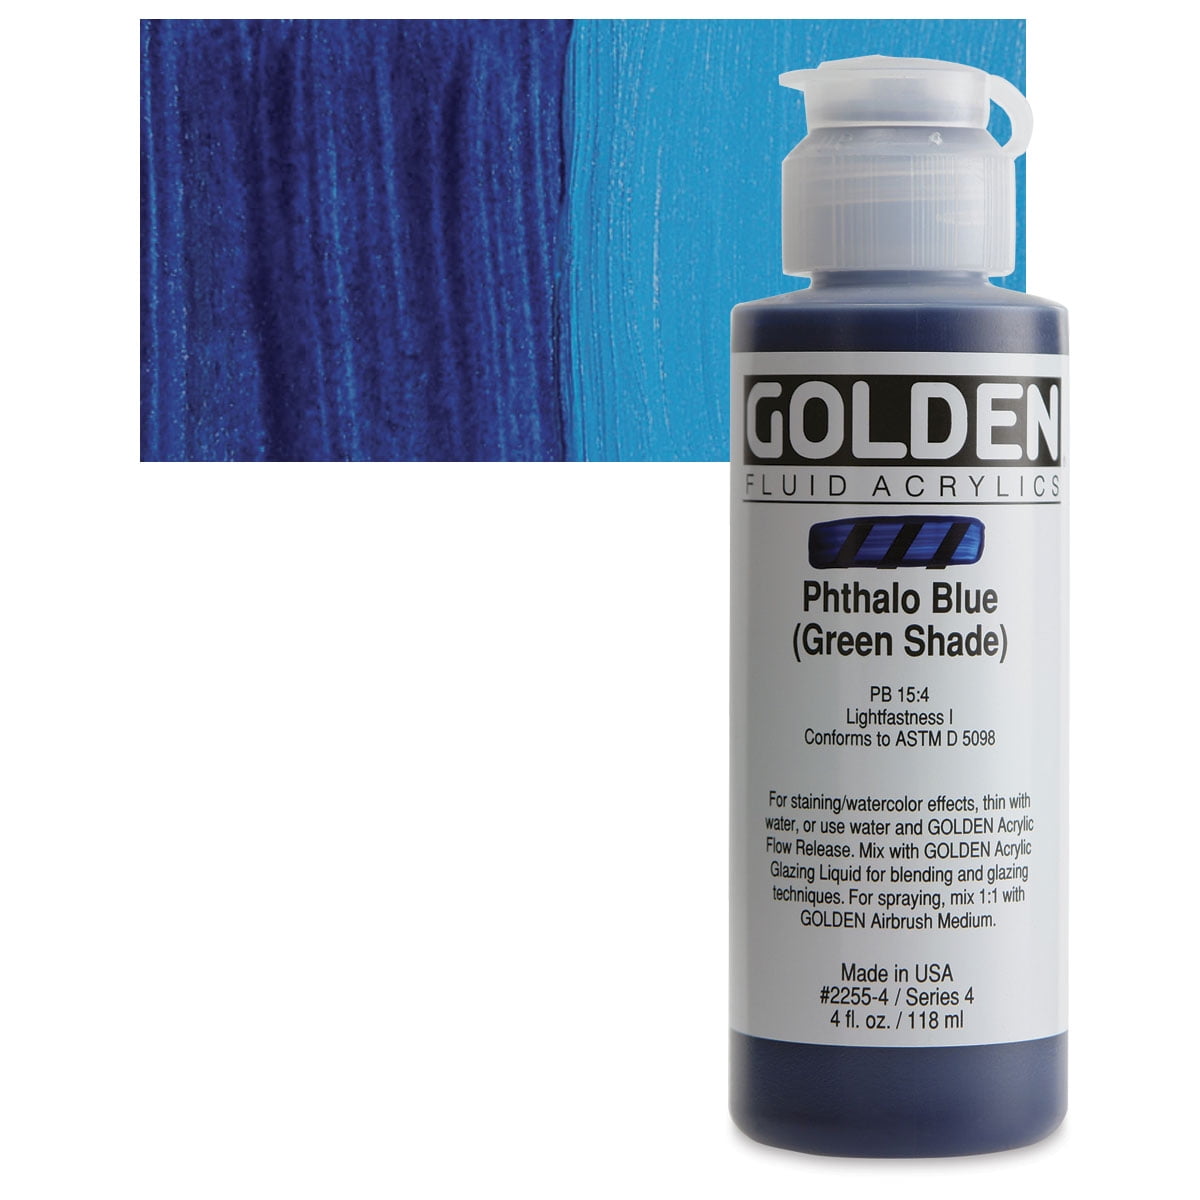 Golden Fluid Acrylic Paint - Iridescent Gold Deep Fine, 8 oz